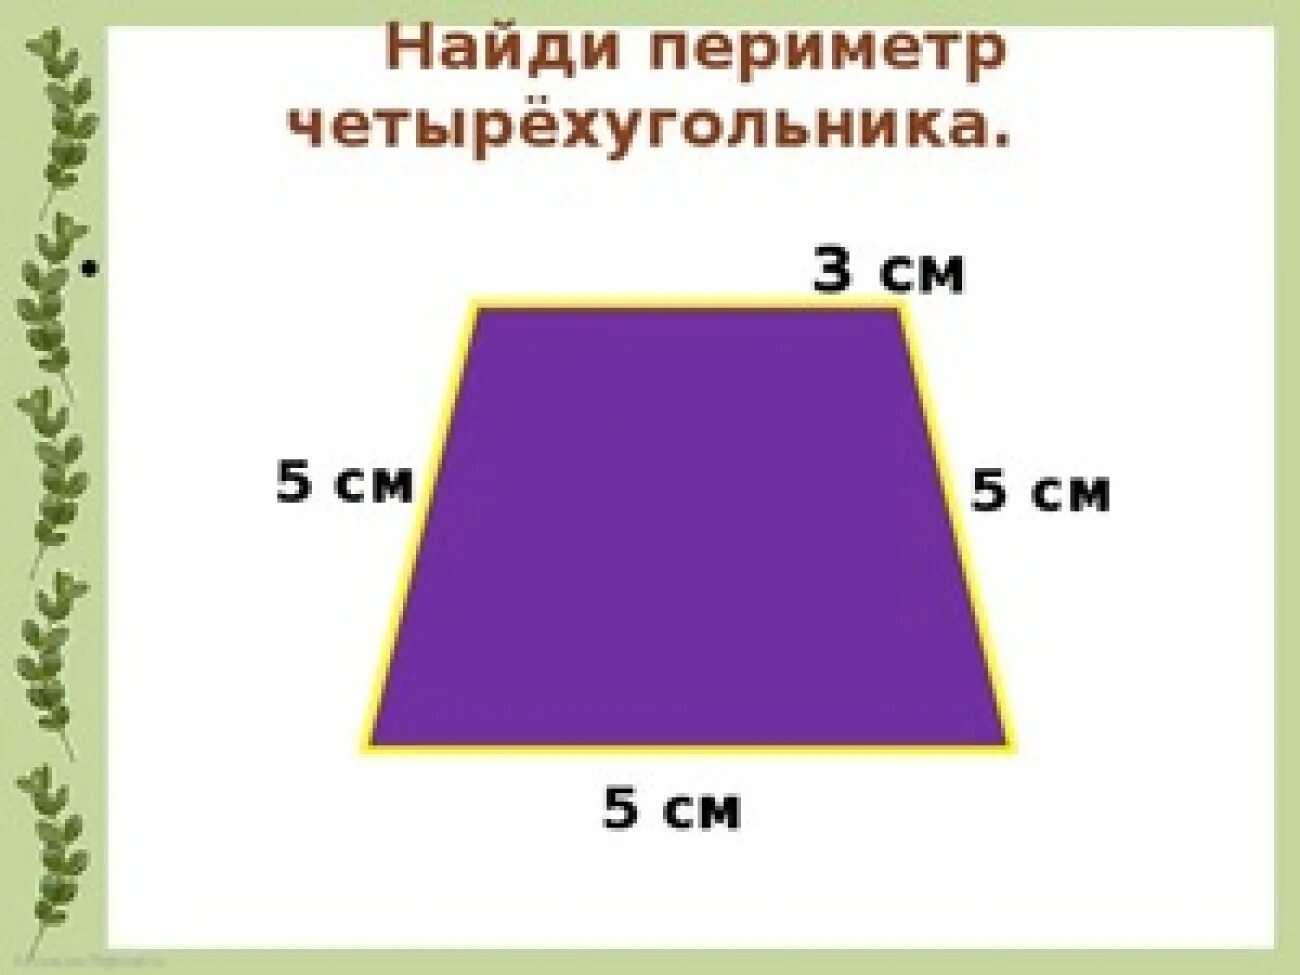 Периметр 50 см. Периметр 4х угольника формула. Как найти периметр четырехугольника. Периметр четырезуголь. Параметры четырехугольника.